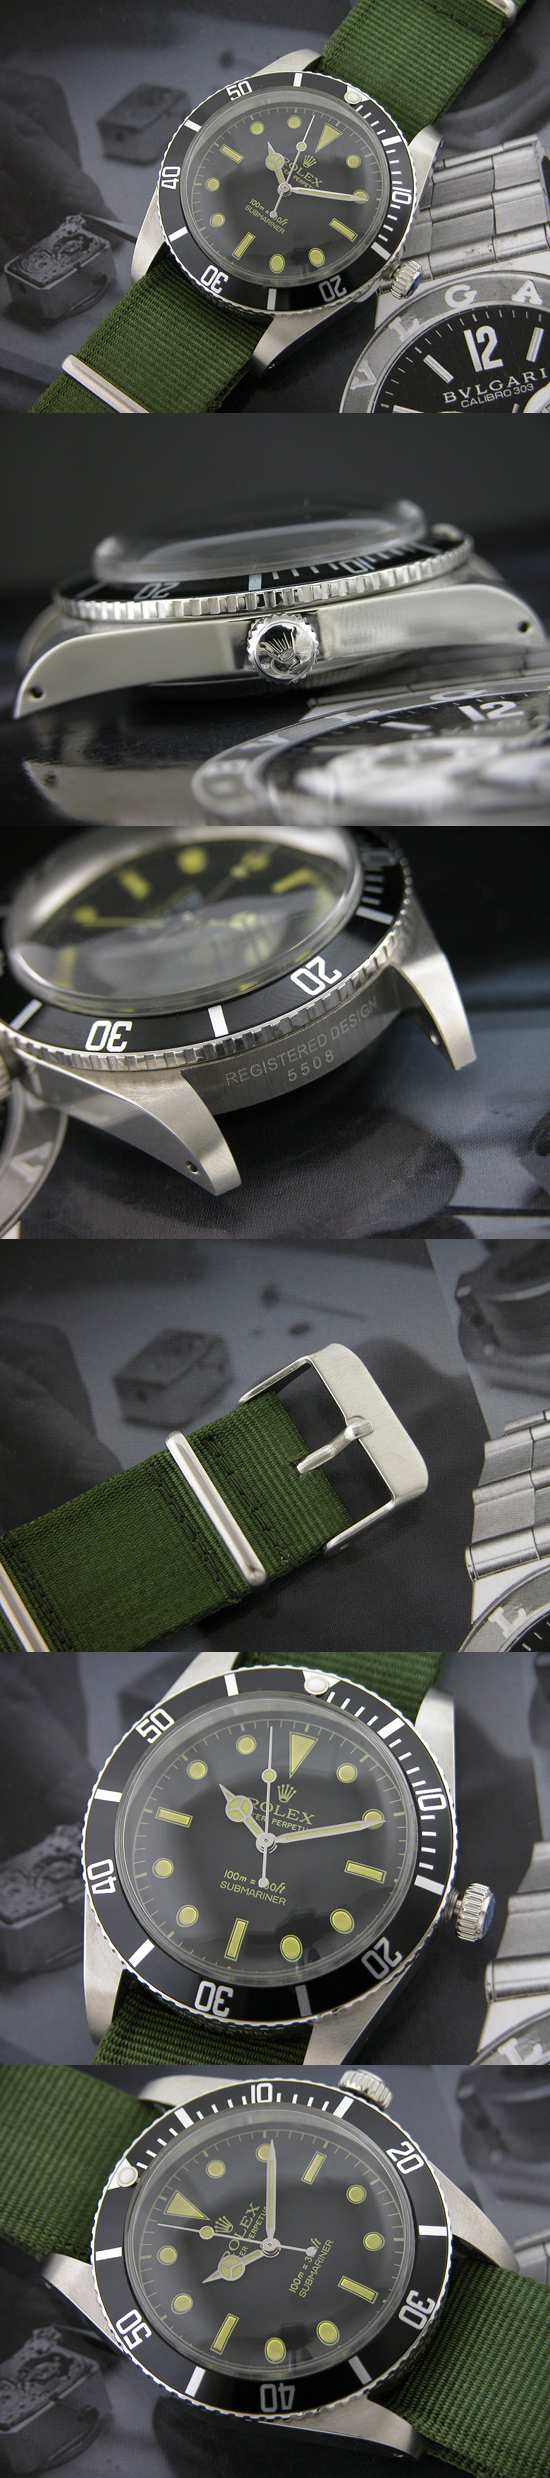 おしゃれなブランド時計がロレックス-サブマリーナ-ROLEX-16610-37-男性用を提供します.